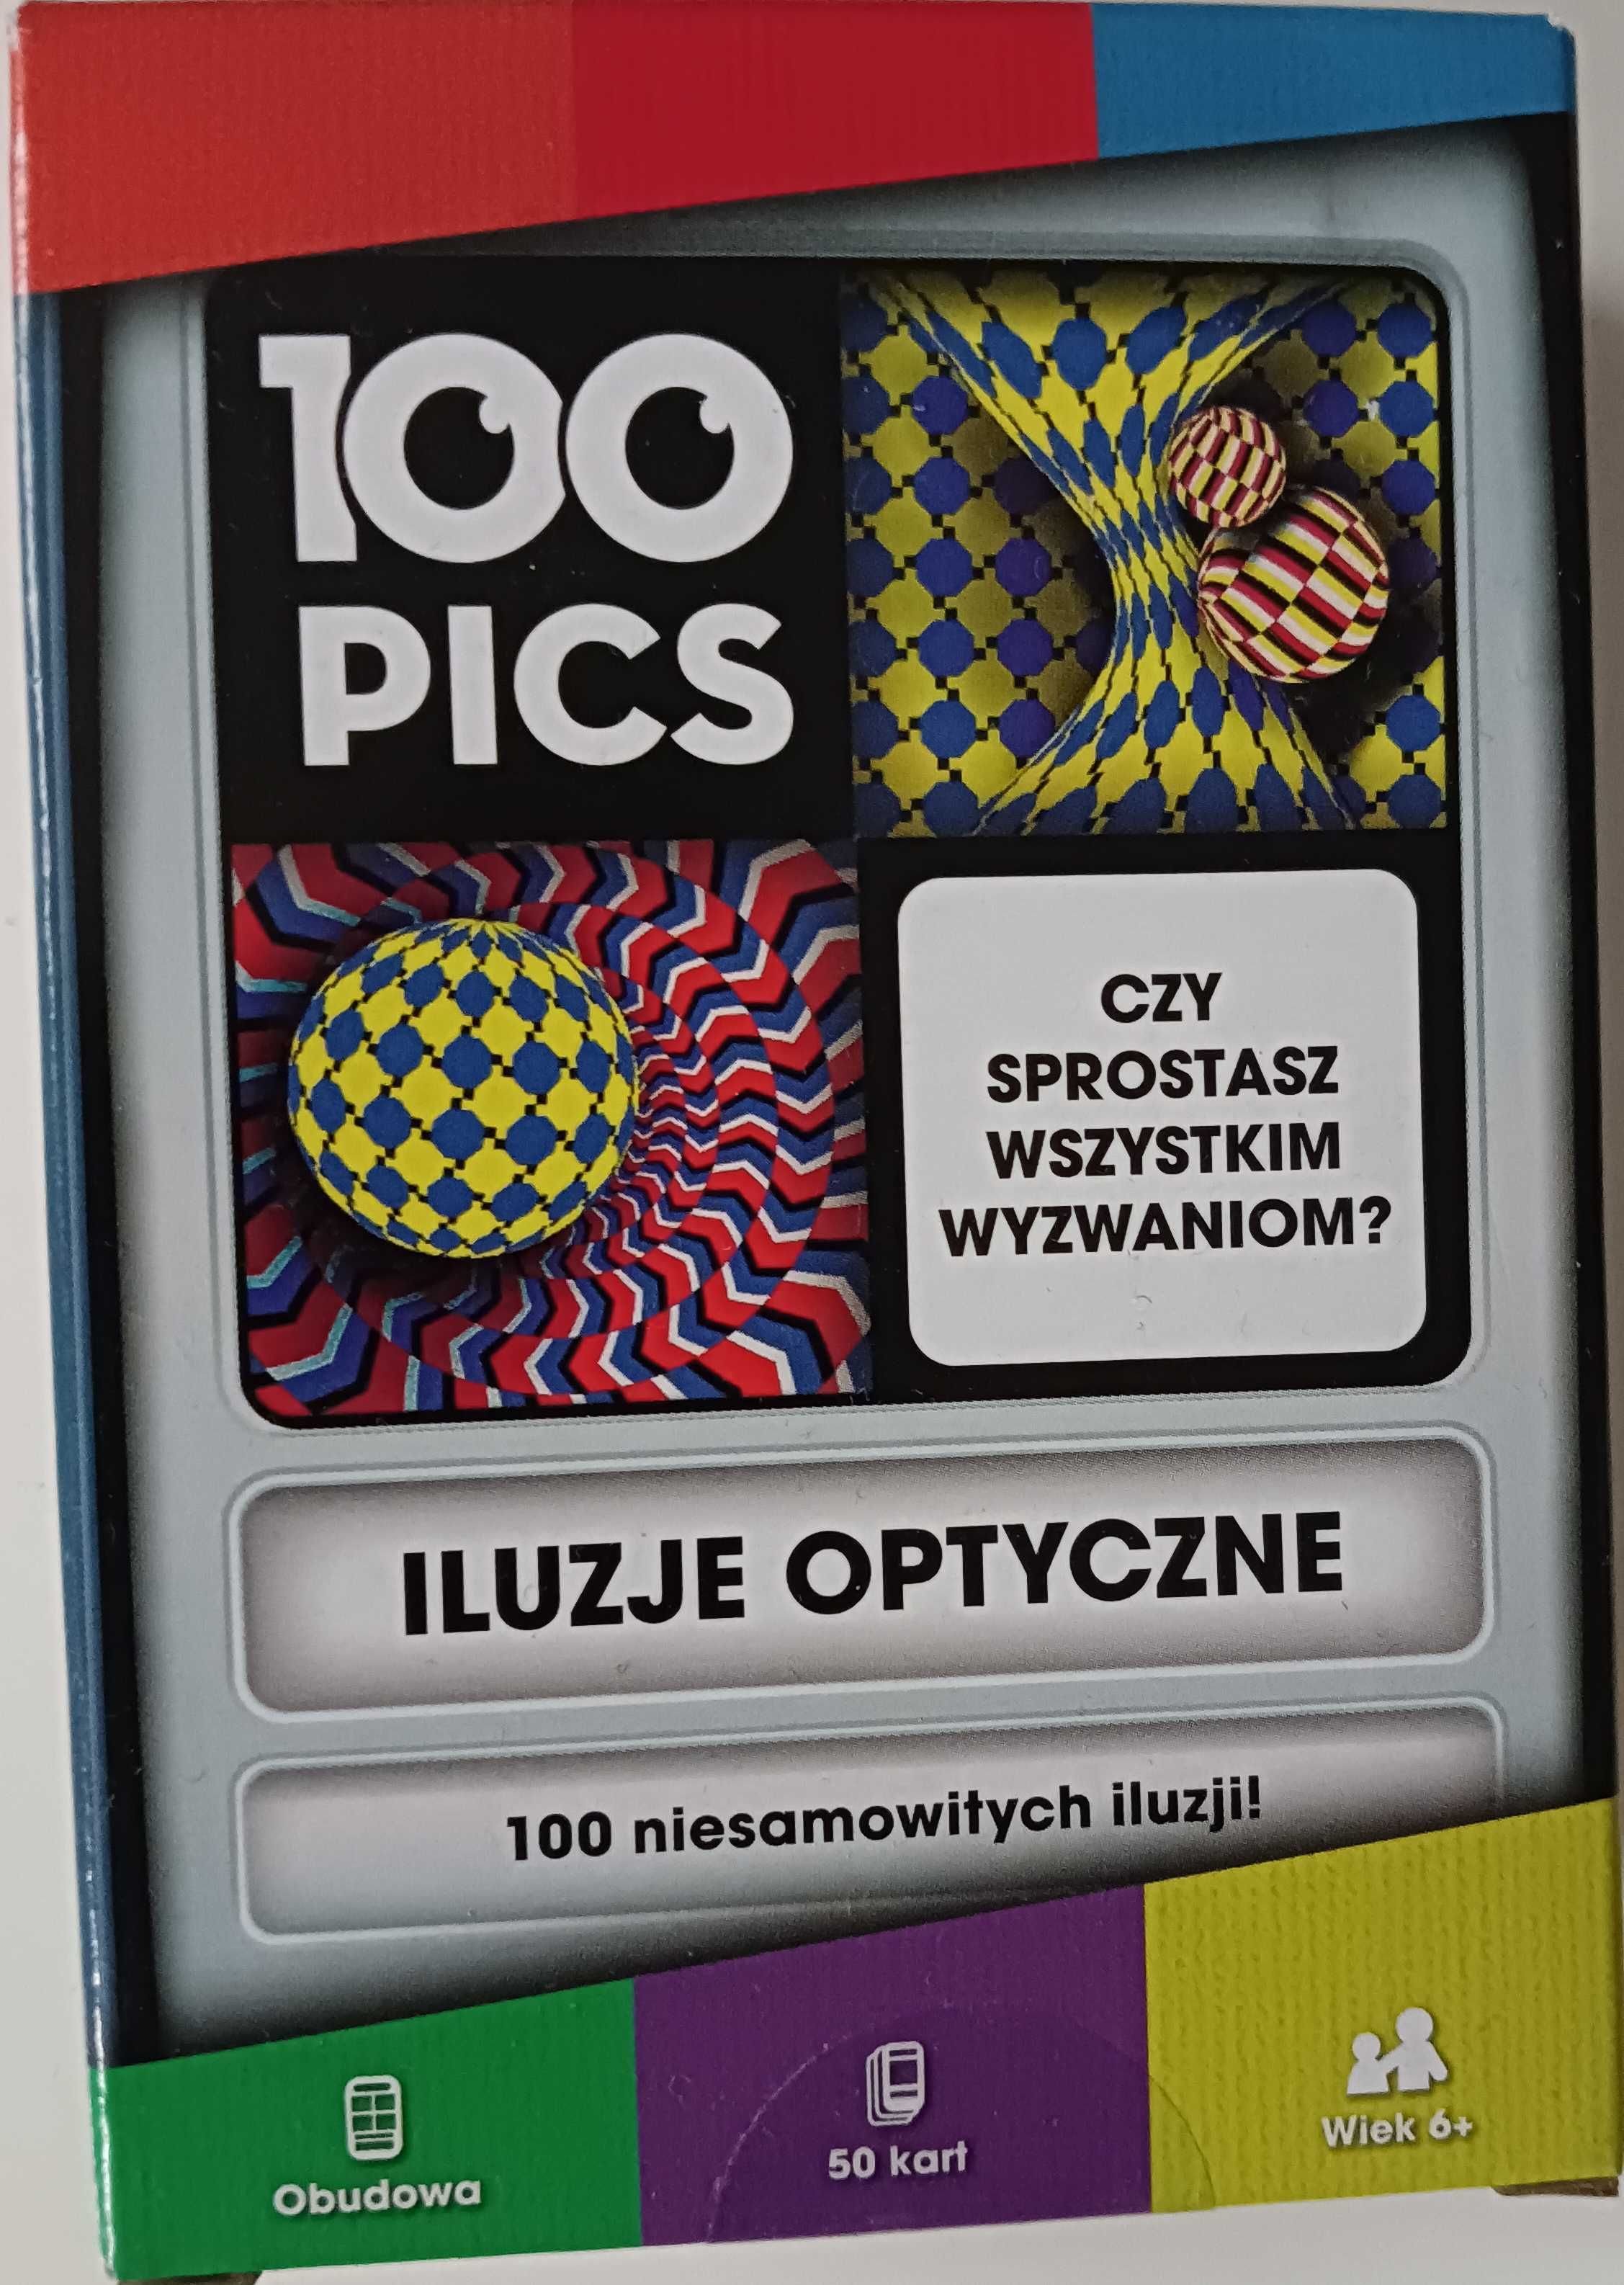 100 pics Iluzje optyczne